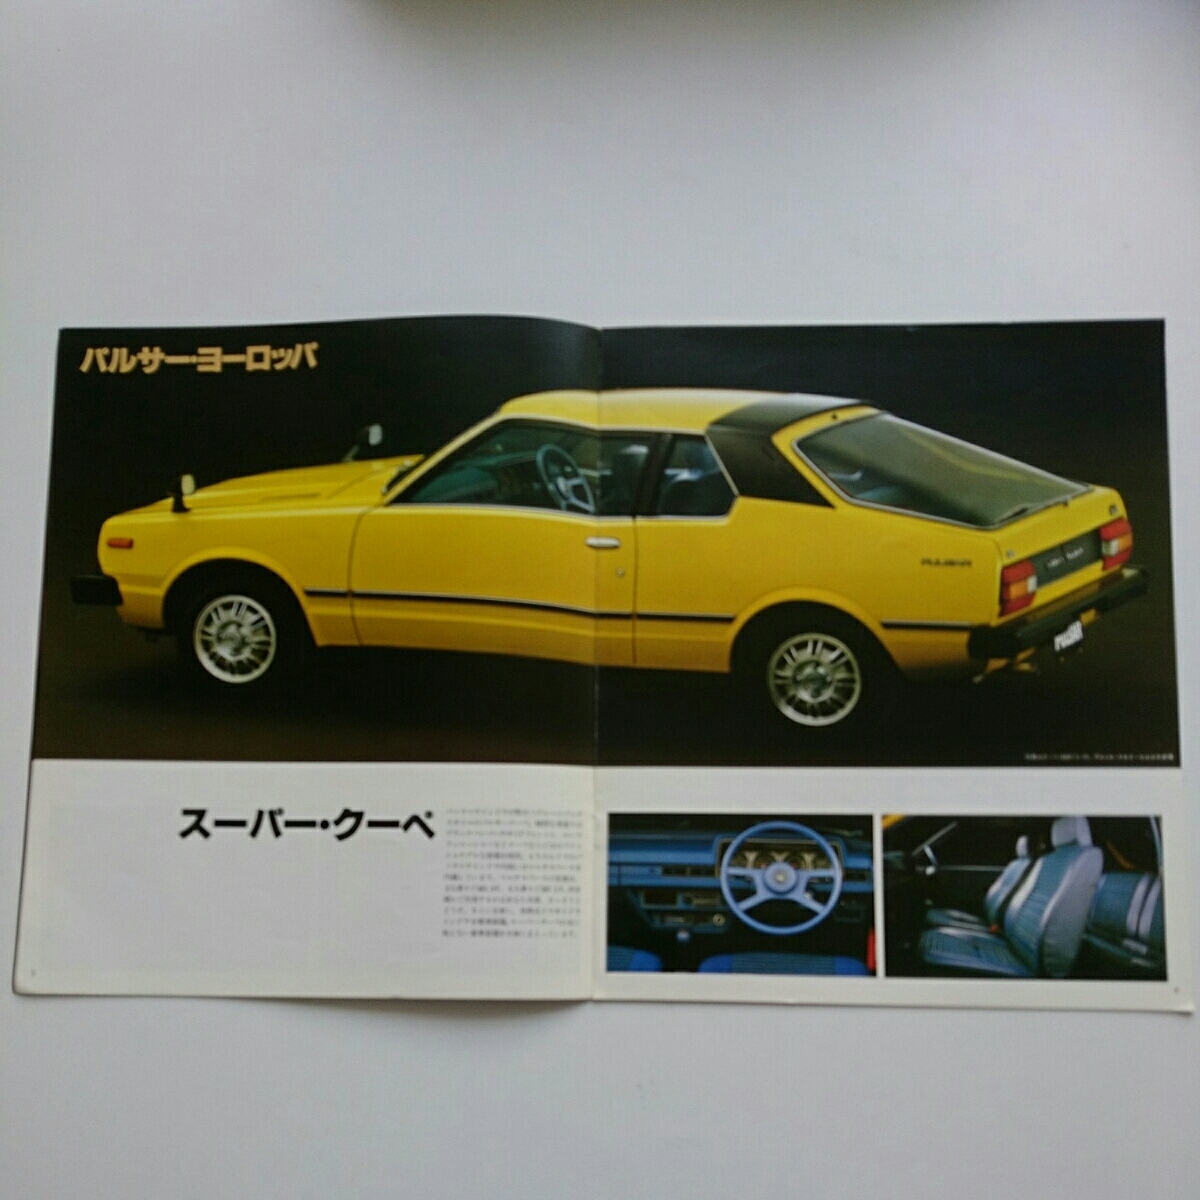  Pulsar & Auster каталог Showa 54 год 3 месяц выпуск не прочитан товар соответствует Showa. распроданный машина 